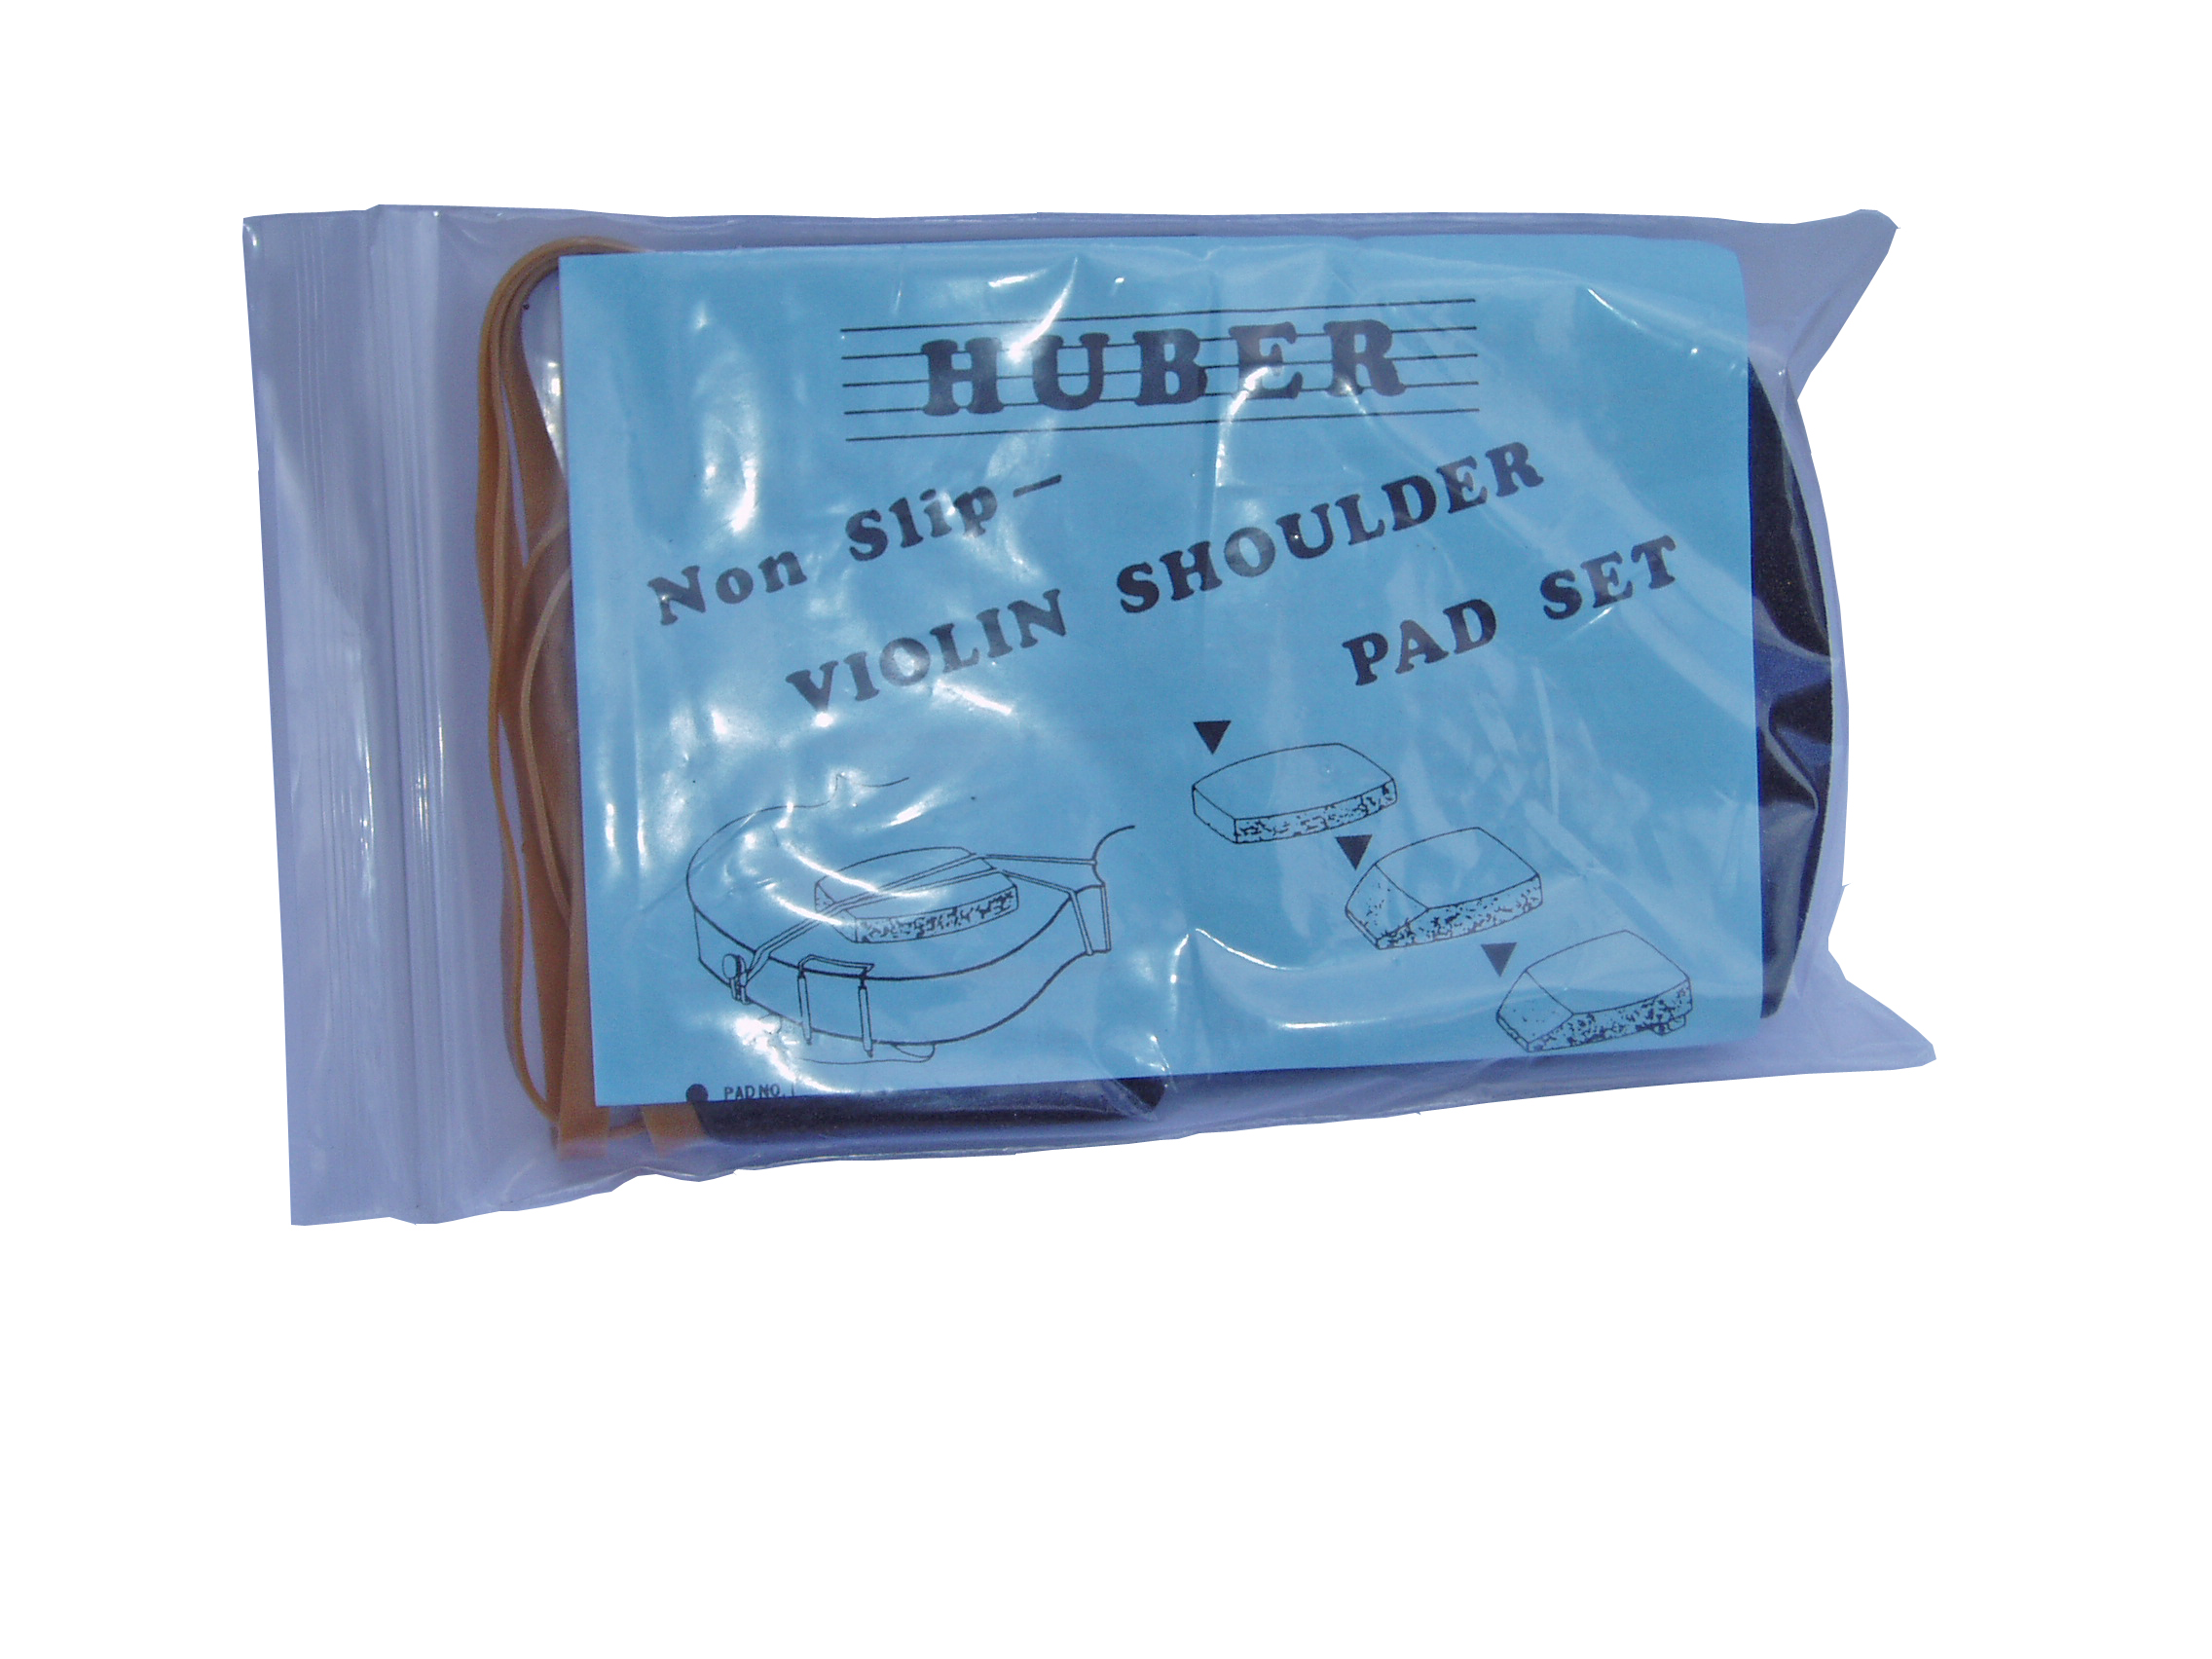 Huber violin shoulder pad